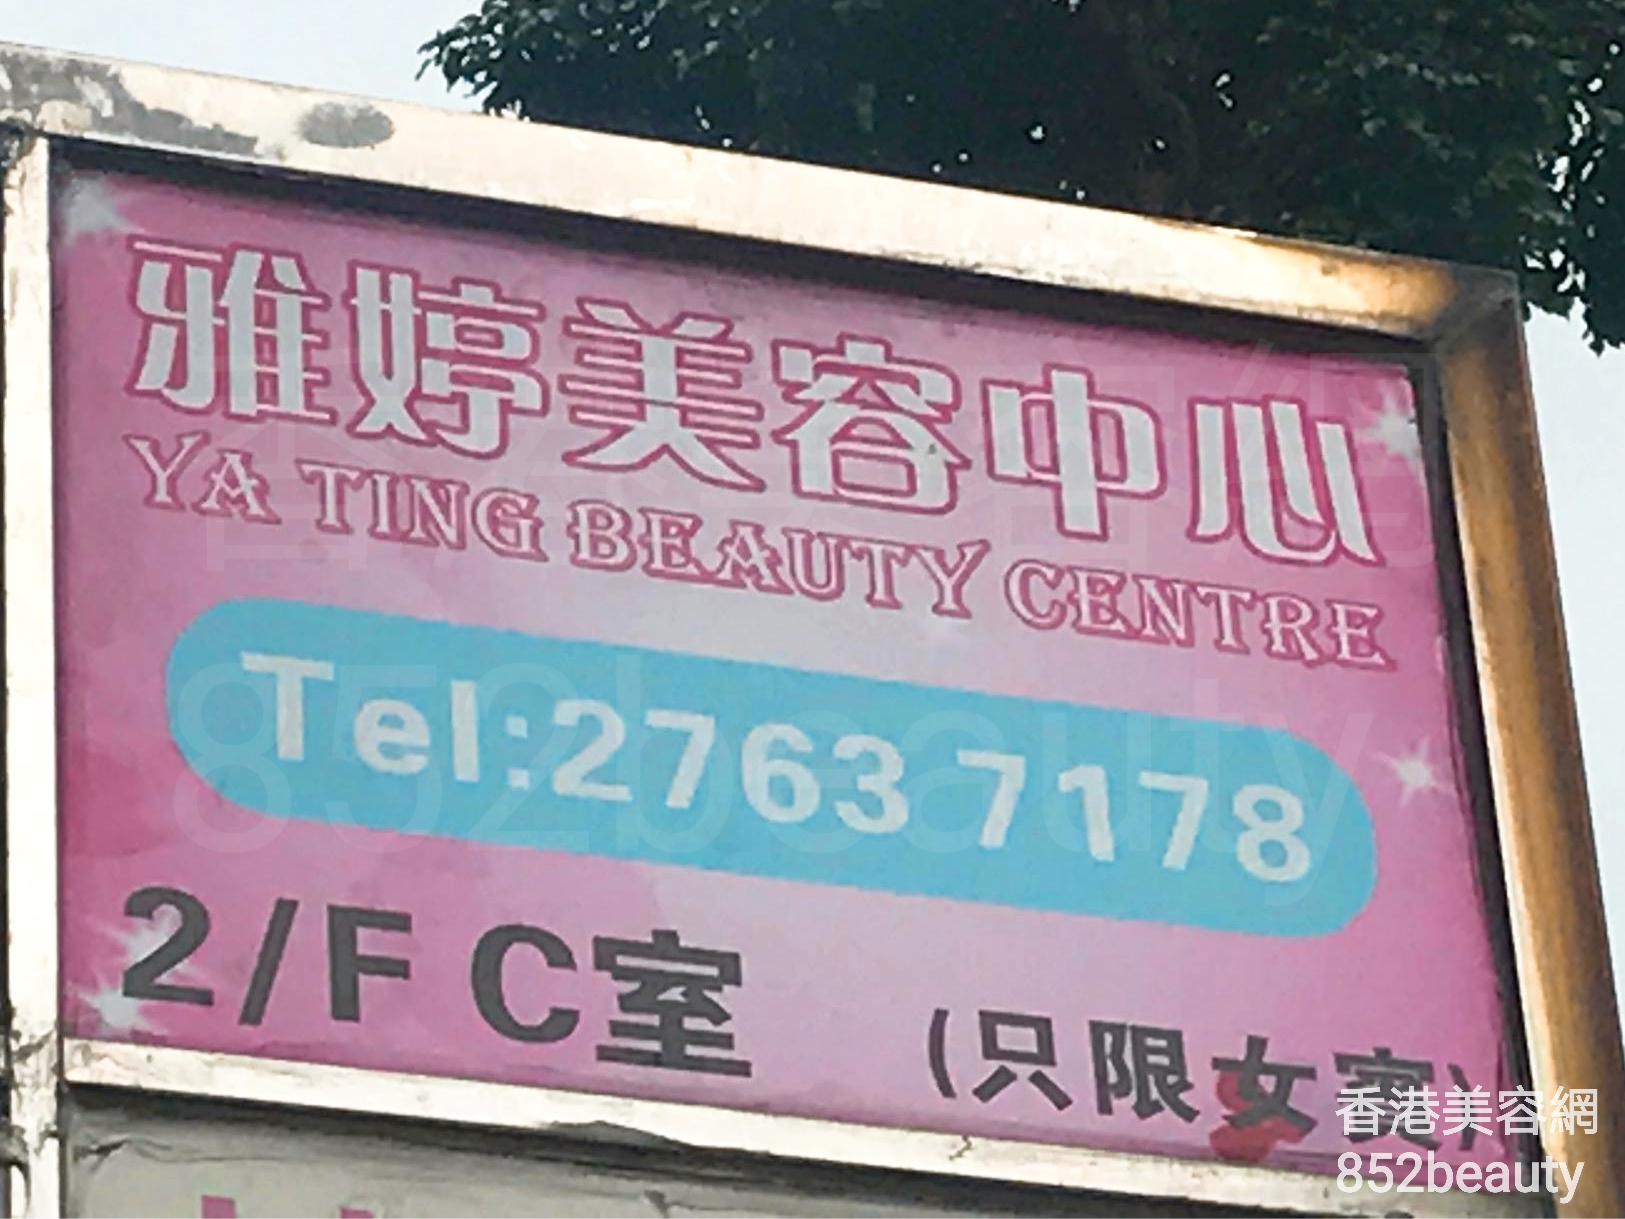 Facial Care: 雅婷美容中心 Ya Ting Beauty Centre